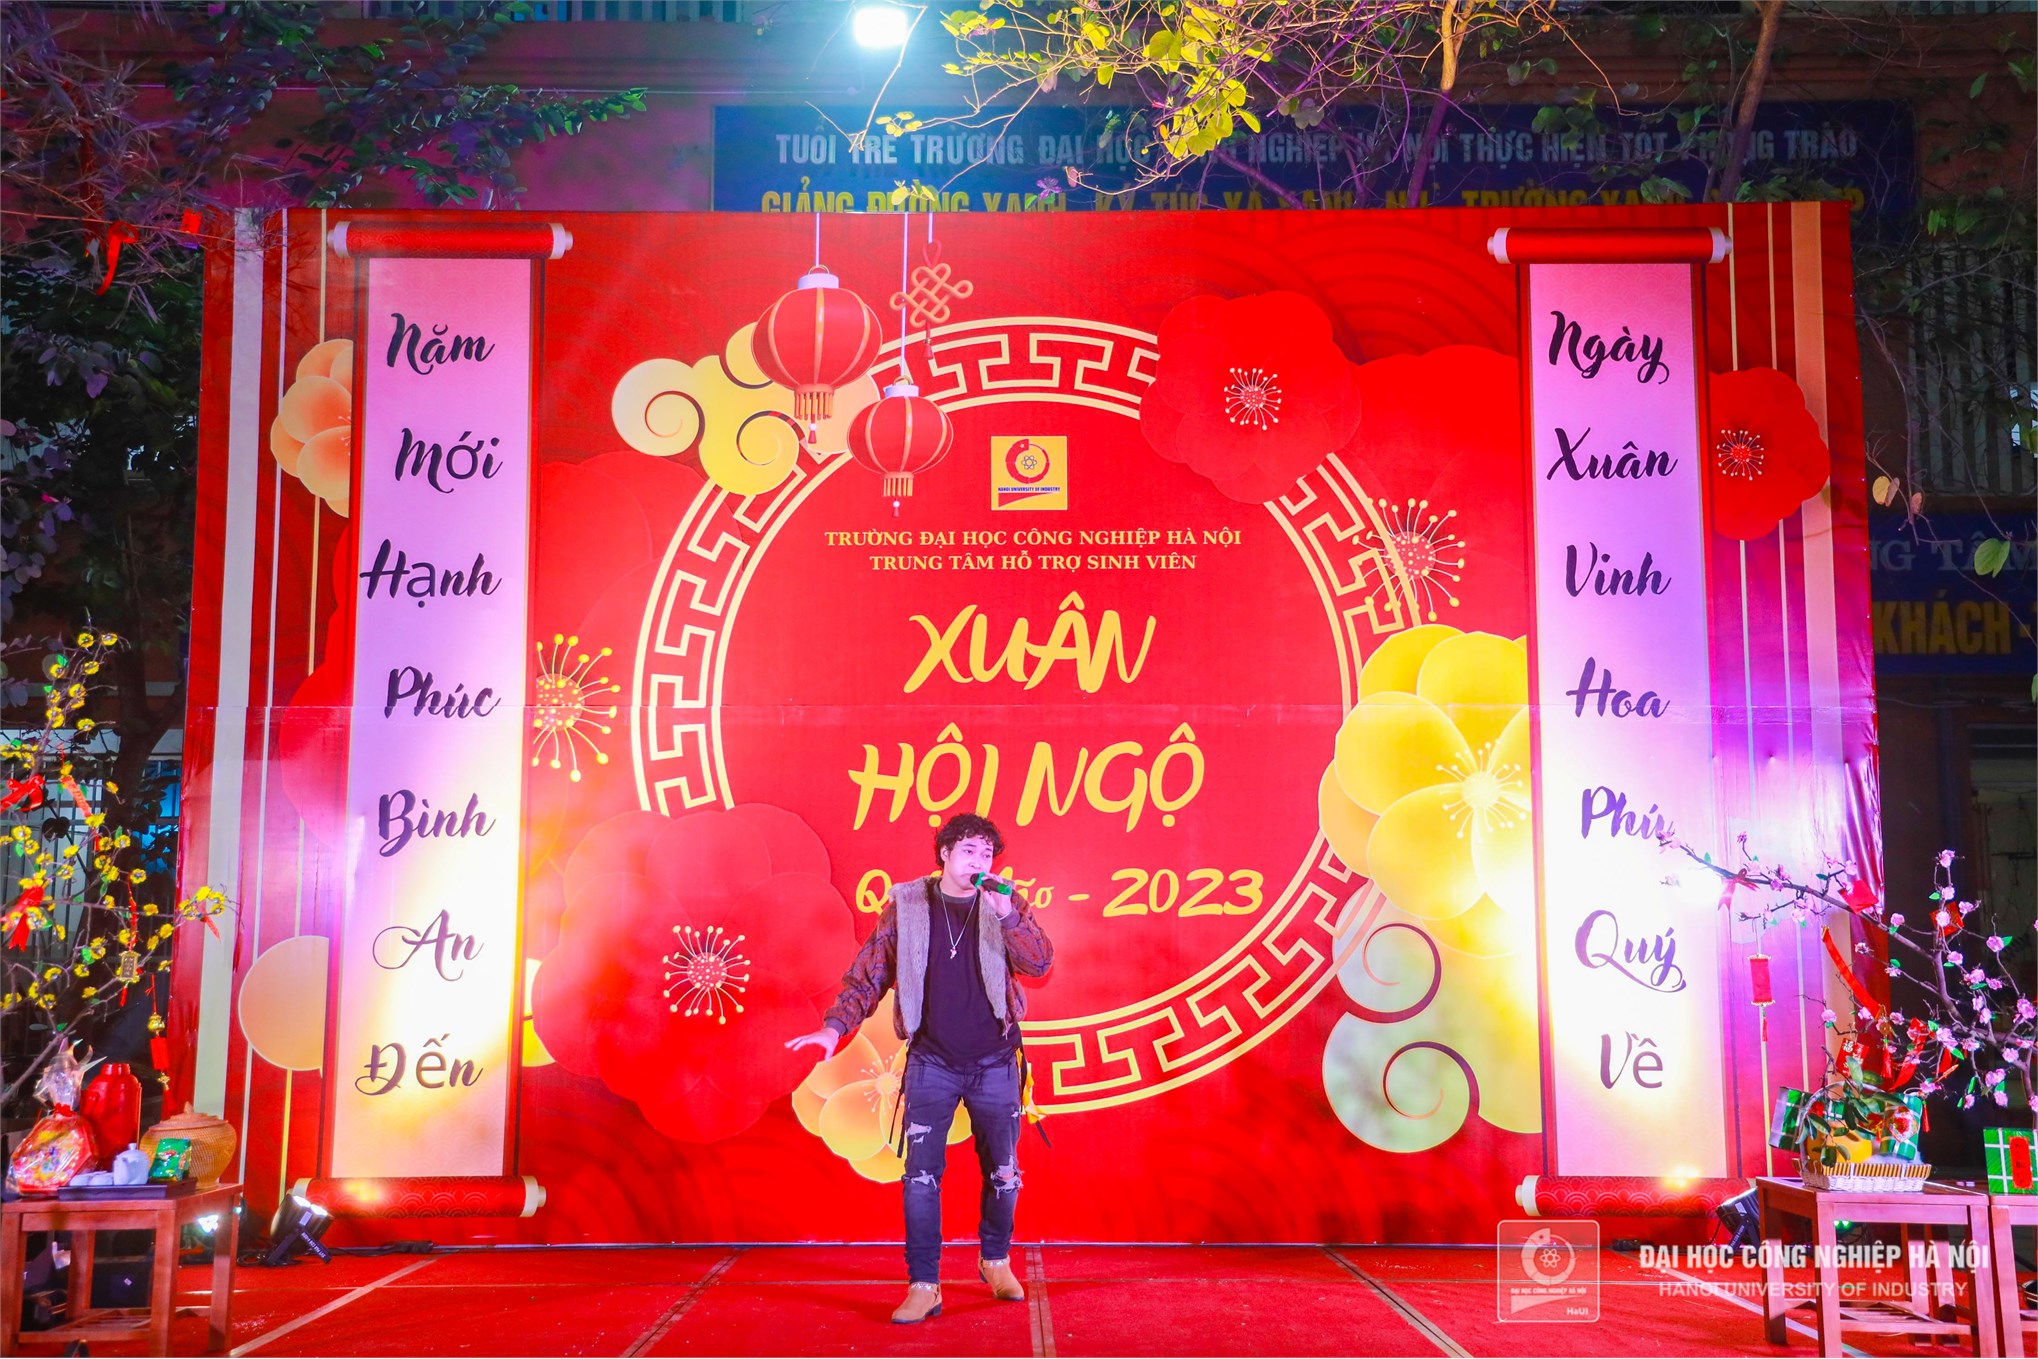 Xuân hội ngộ 2023: Cơ hội để sinh viên quốc tế trải nghiệm văn hóa Tết Việt